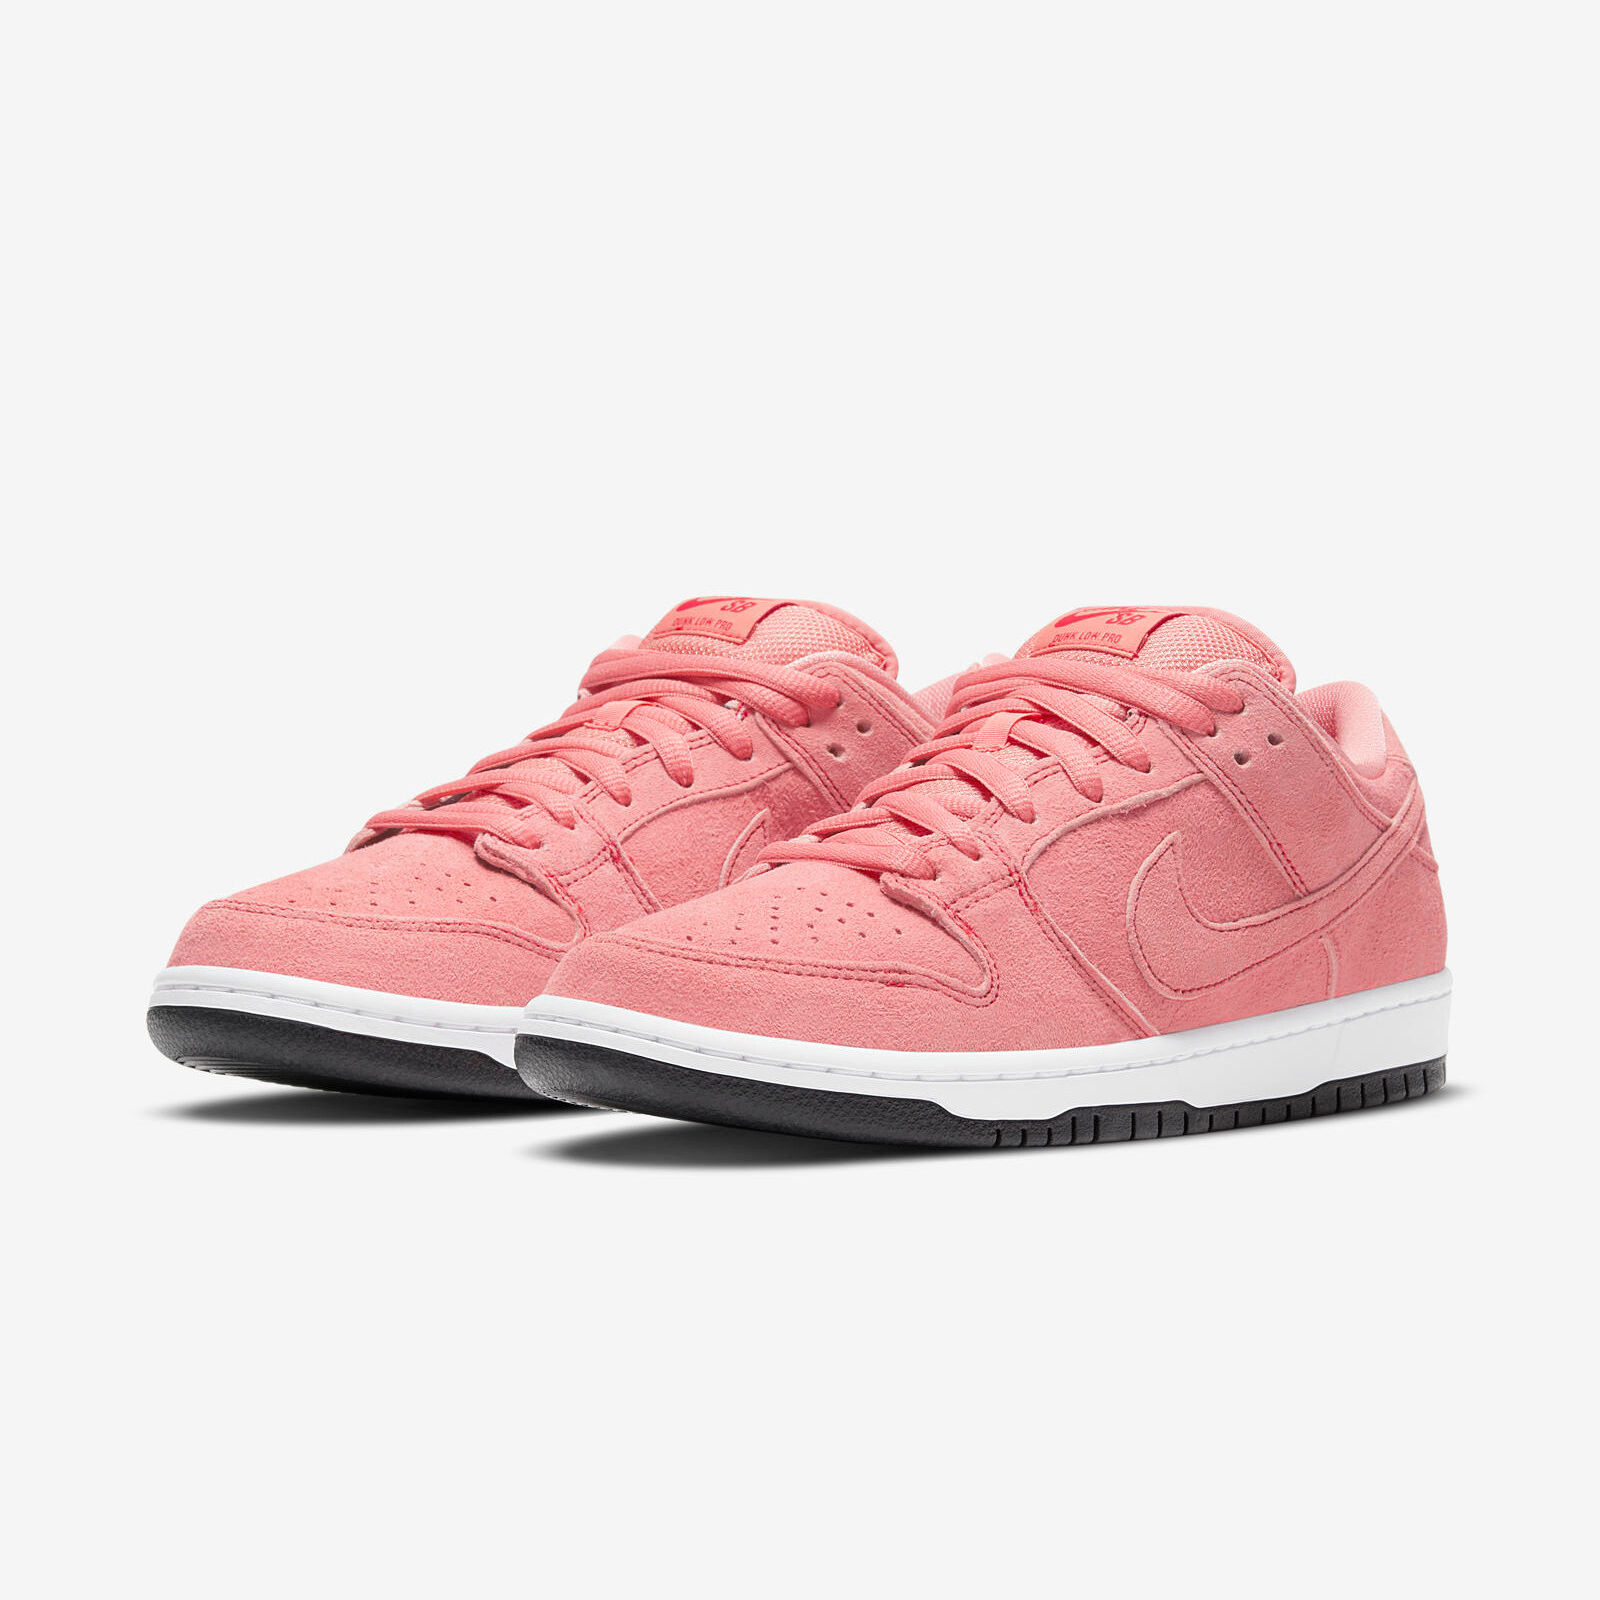 Nike SB Dunk Low
« Pink Pig »